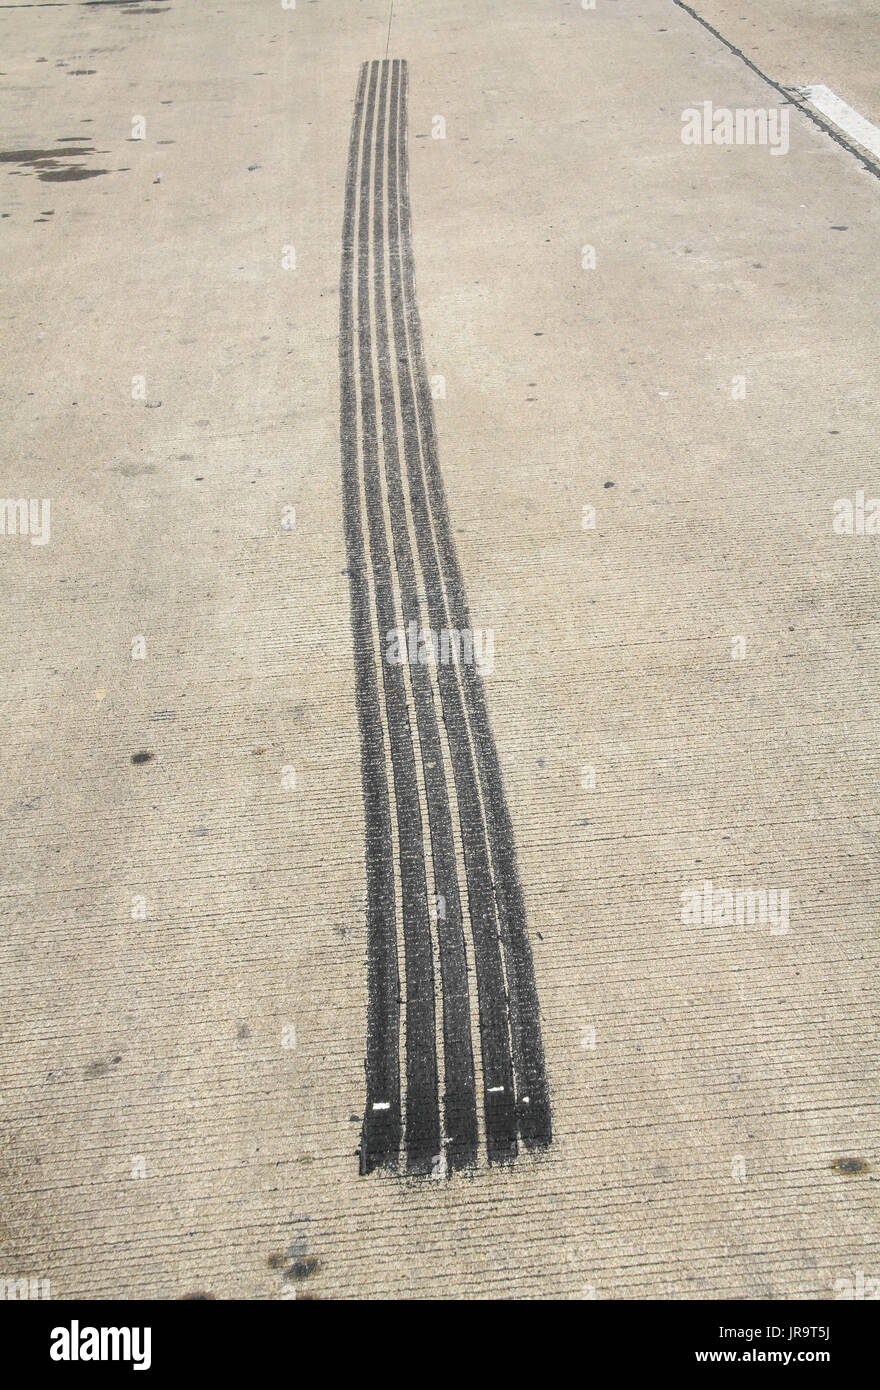 Schwarzen Anschluss reifen Bremse auf konkrete Straße Stockfoto